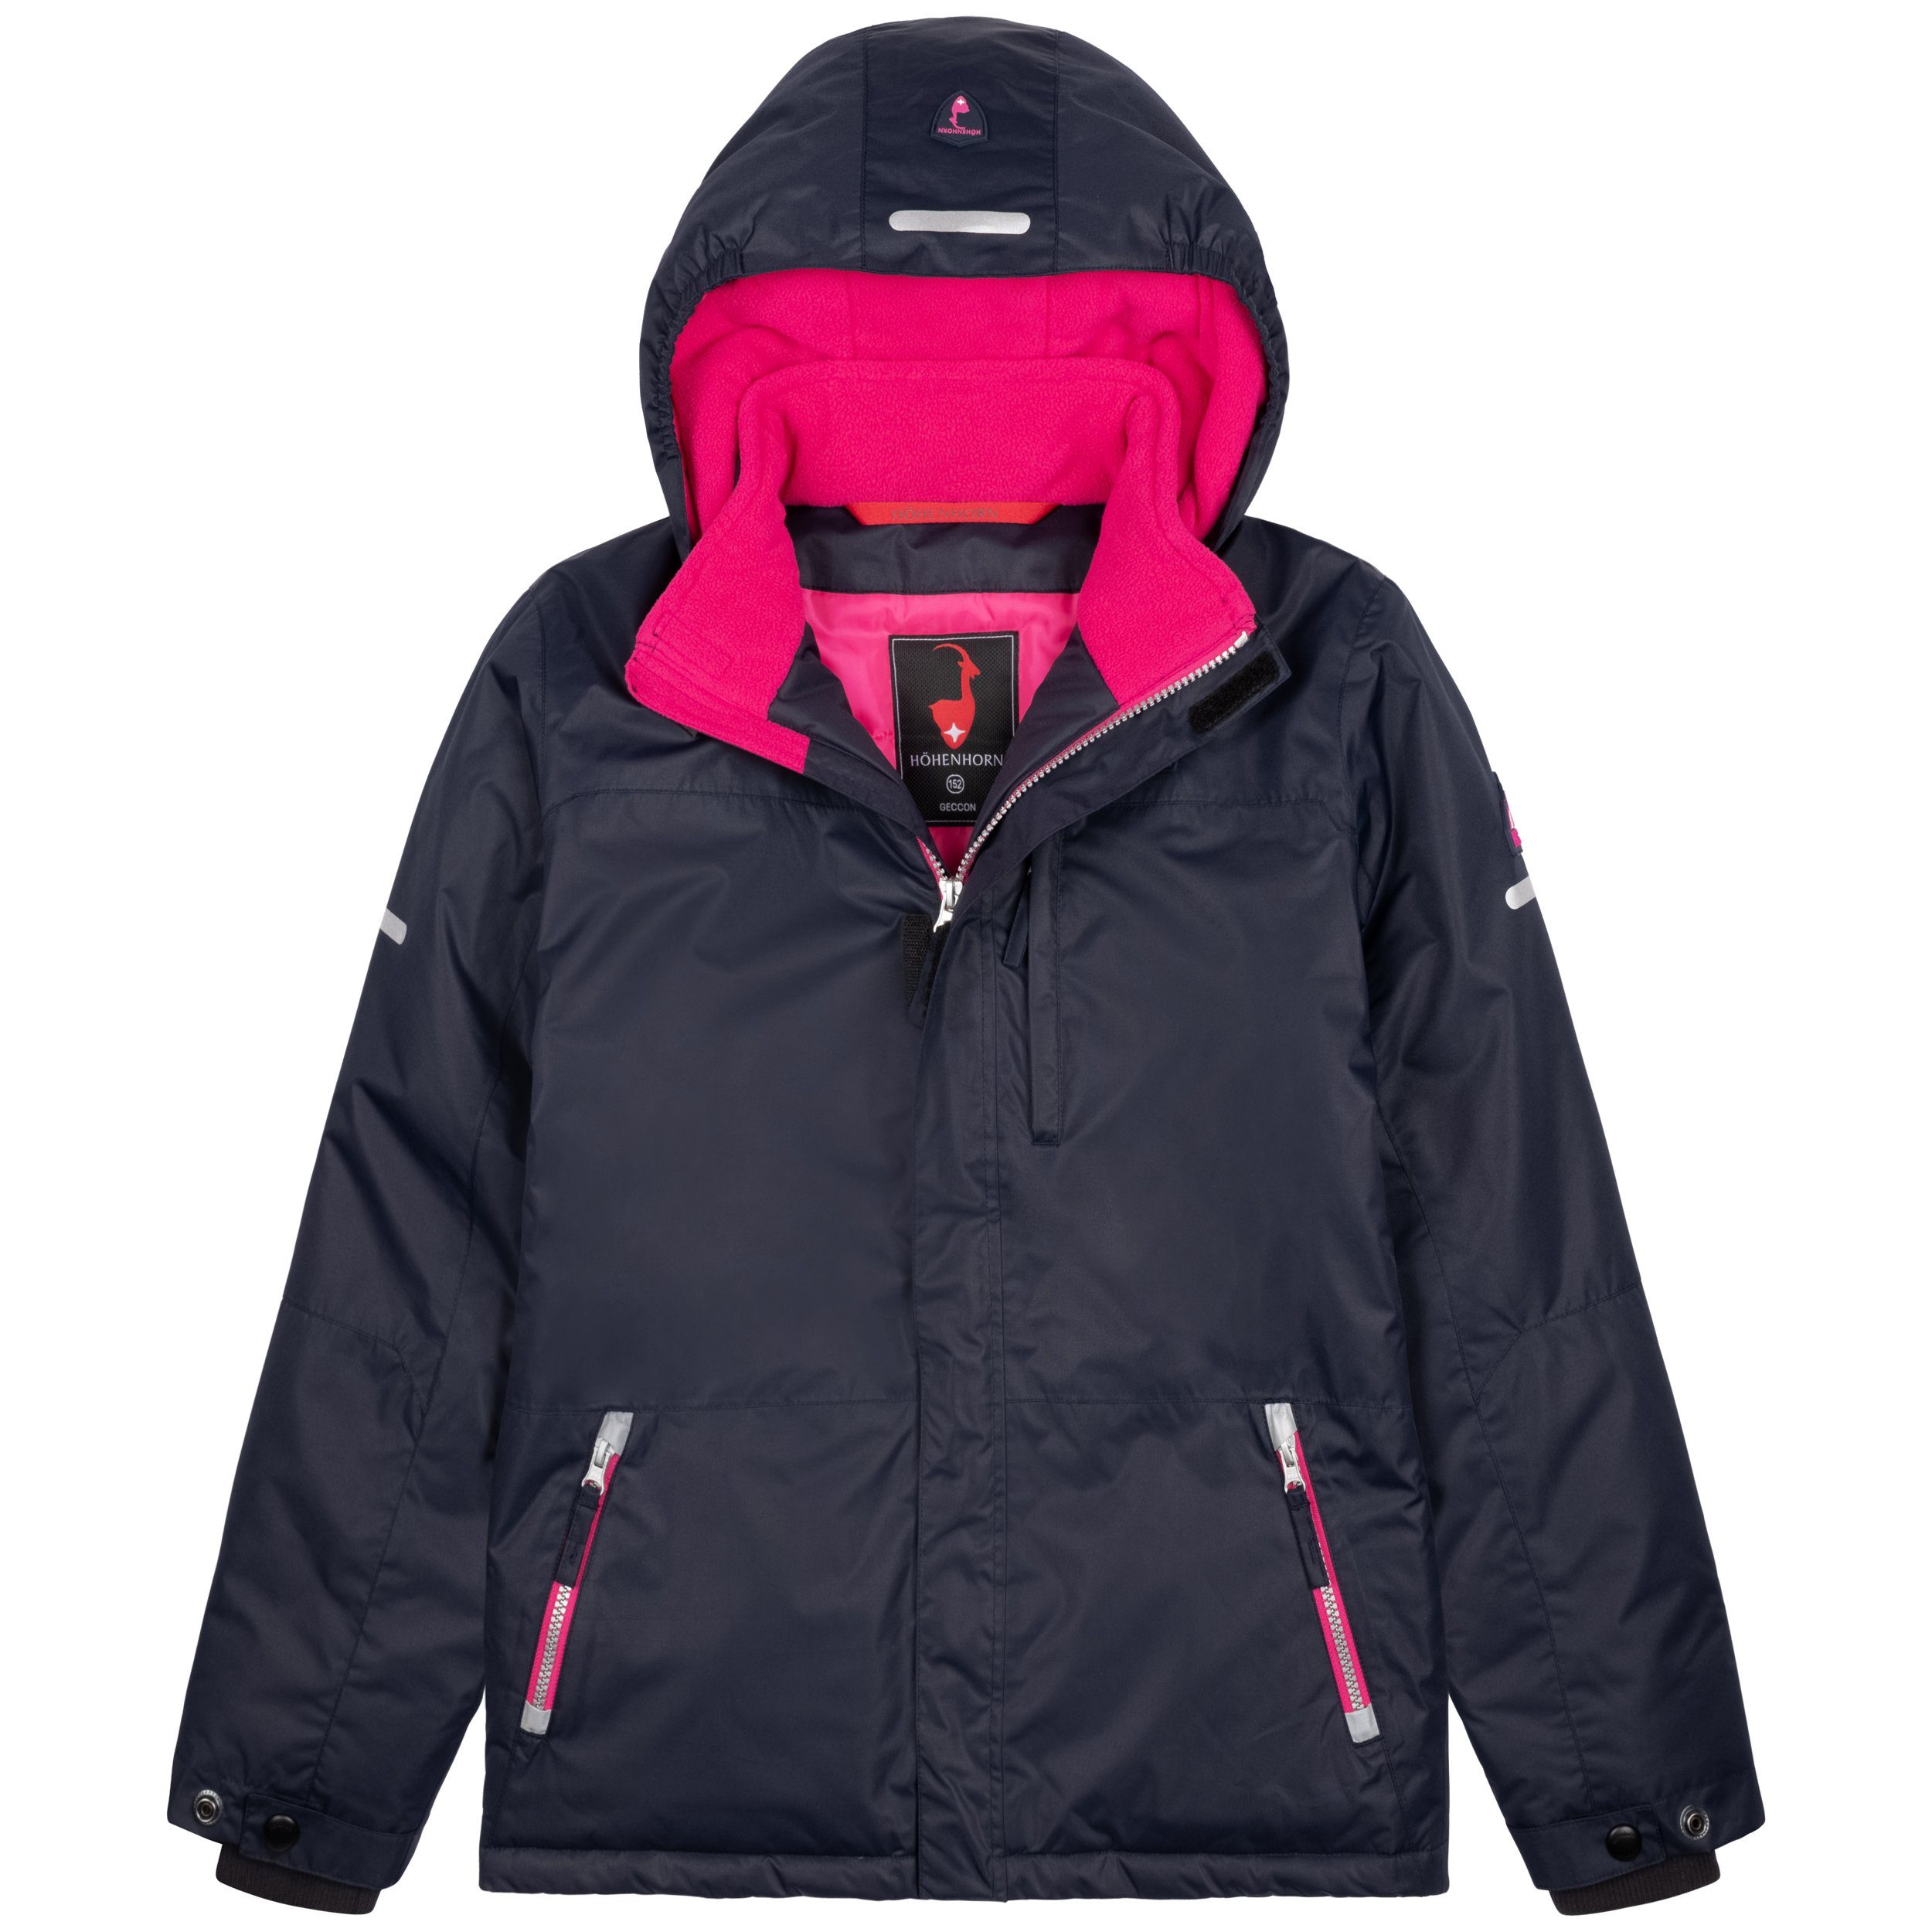 Mädchen Dunkelblau/Pink mit Jacke Winter Jungen Gefüttert Kinder Geccon Winterjacke Höhenhorn Schneefang